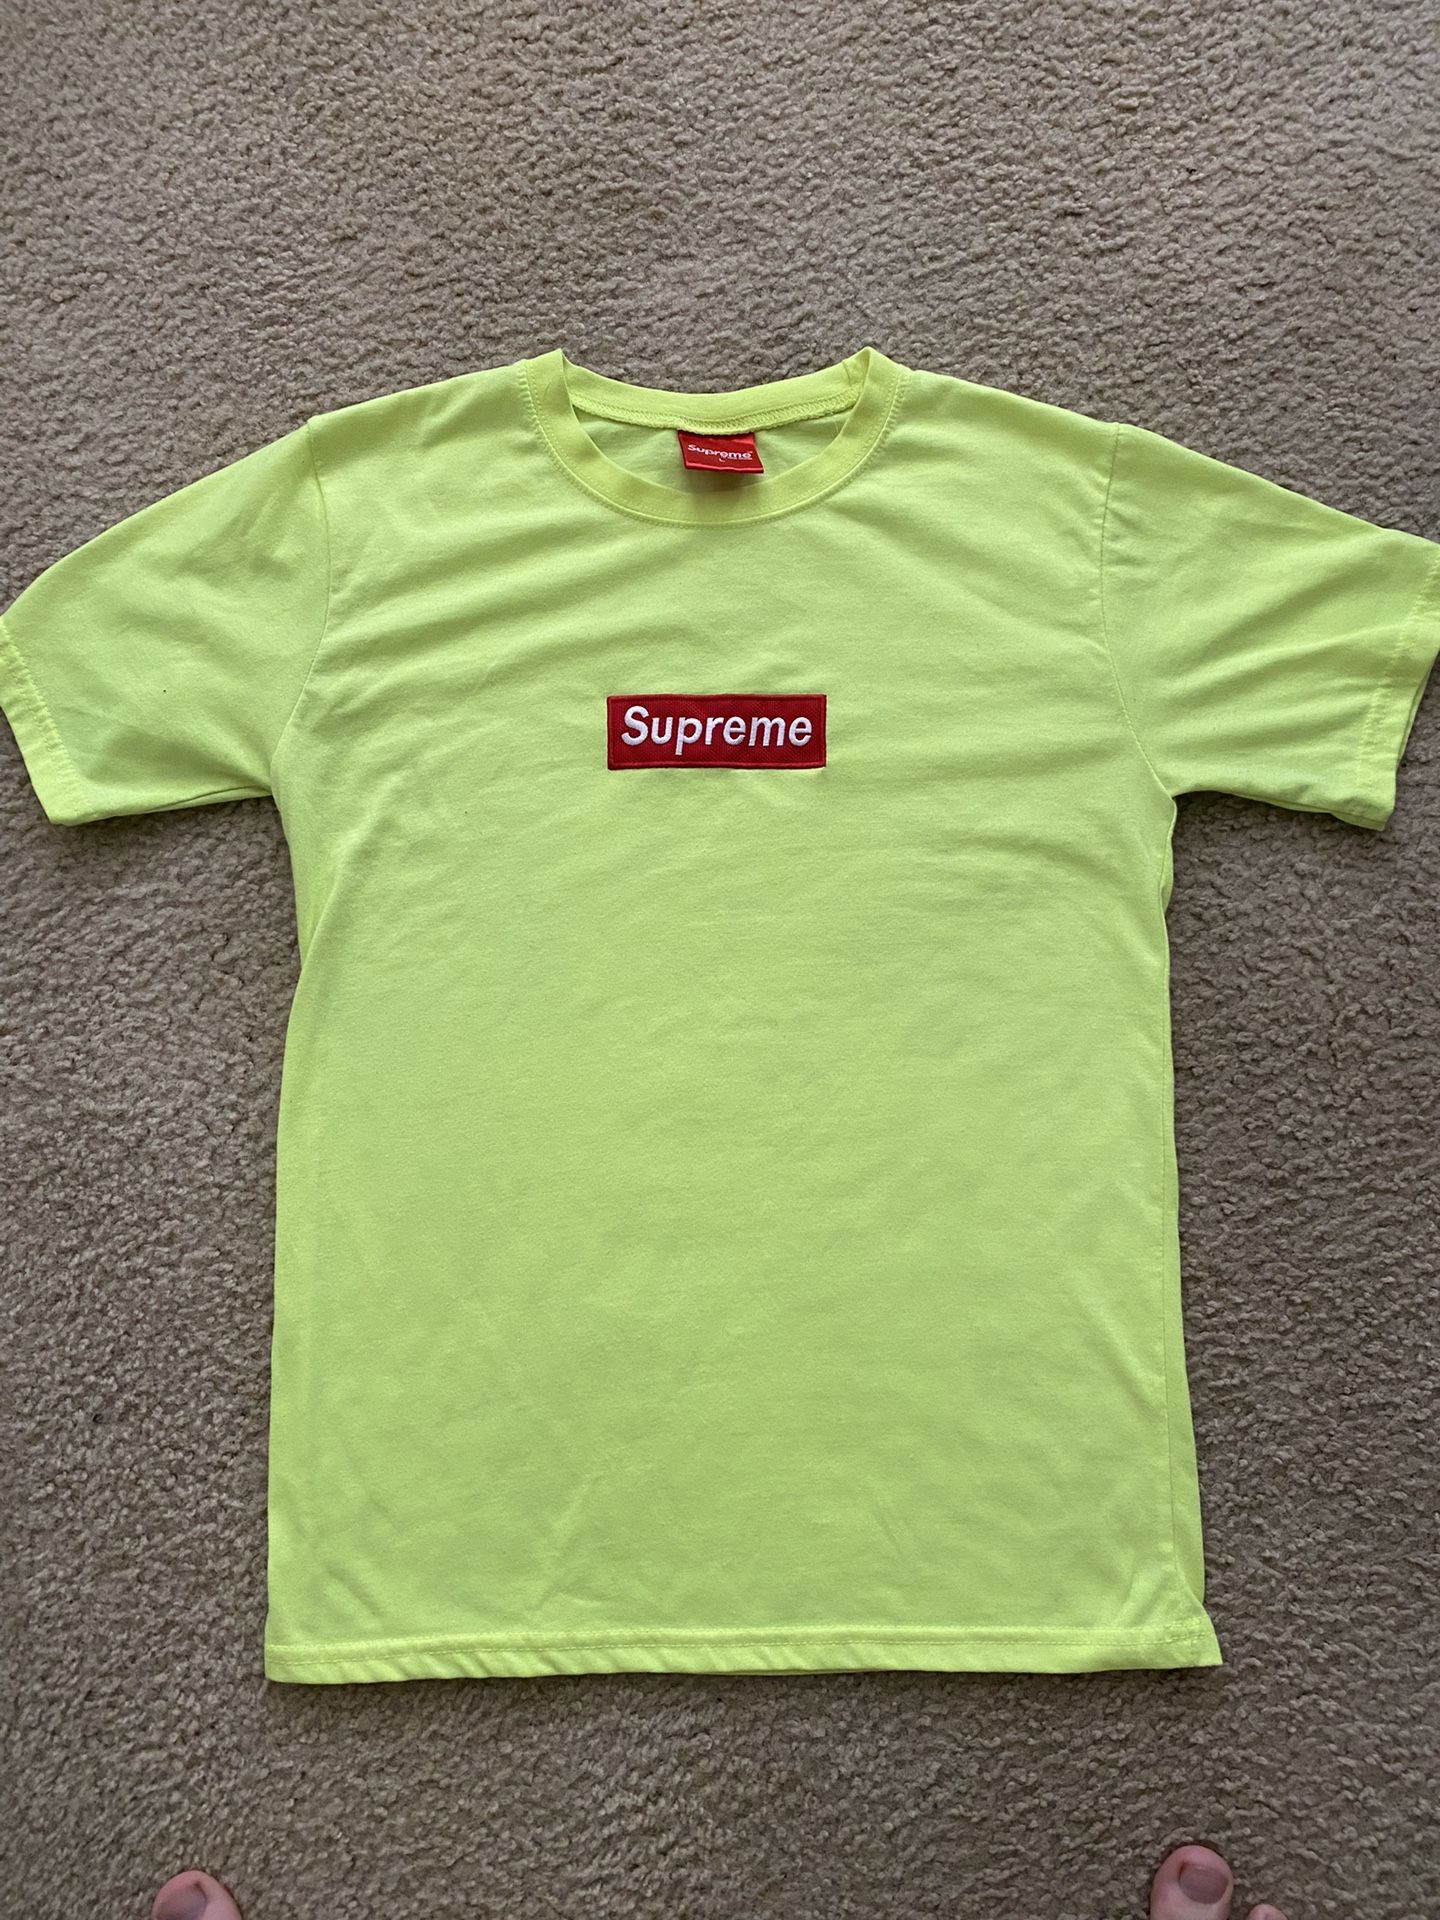 Supreme Box Logo Green TShirt 